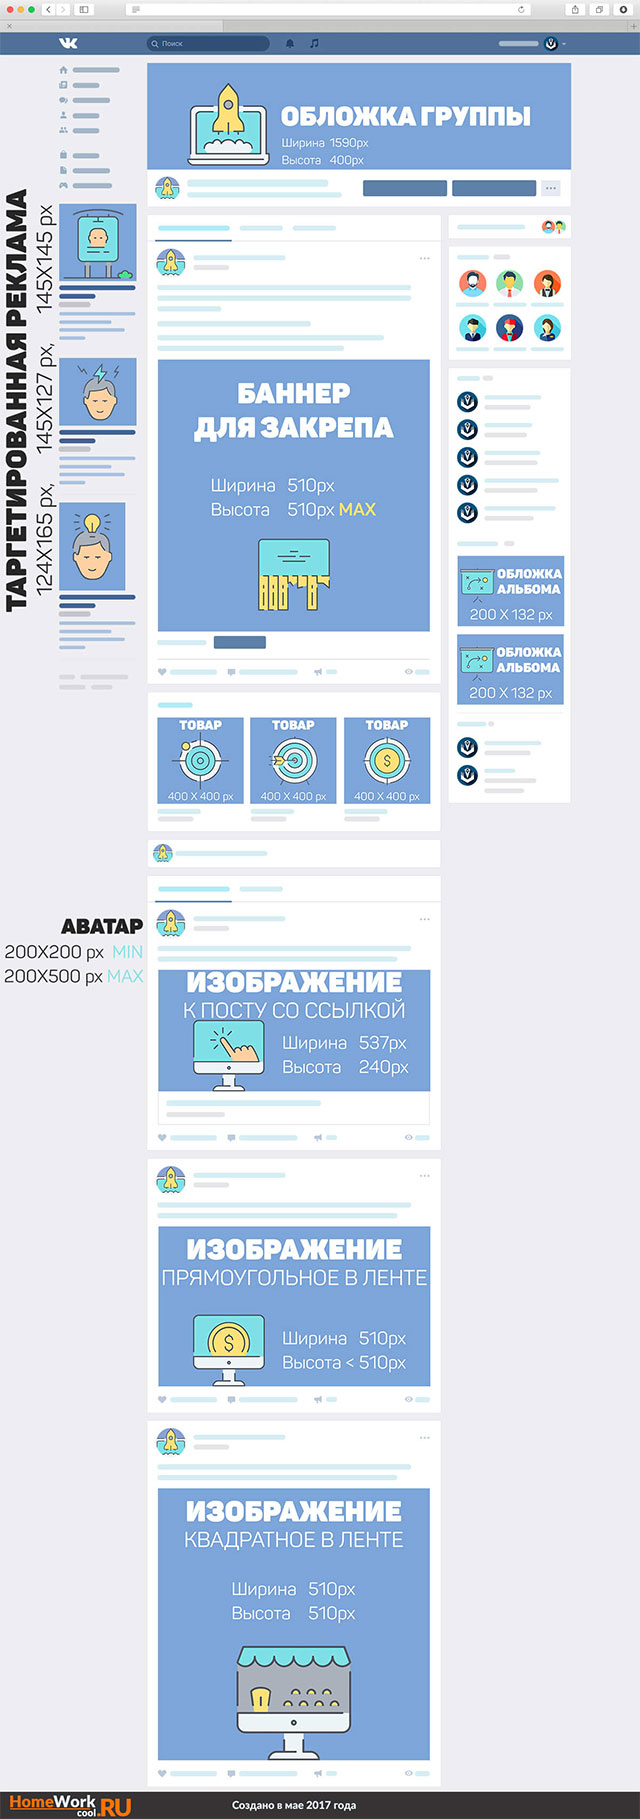 Размеры обложки группы ВКонтакте